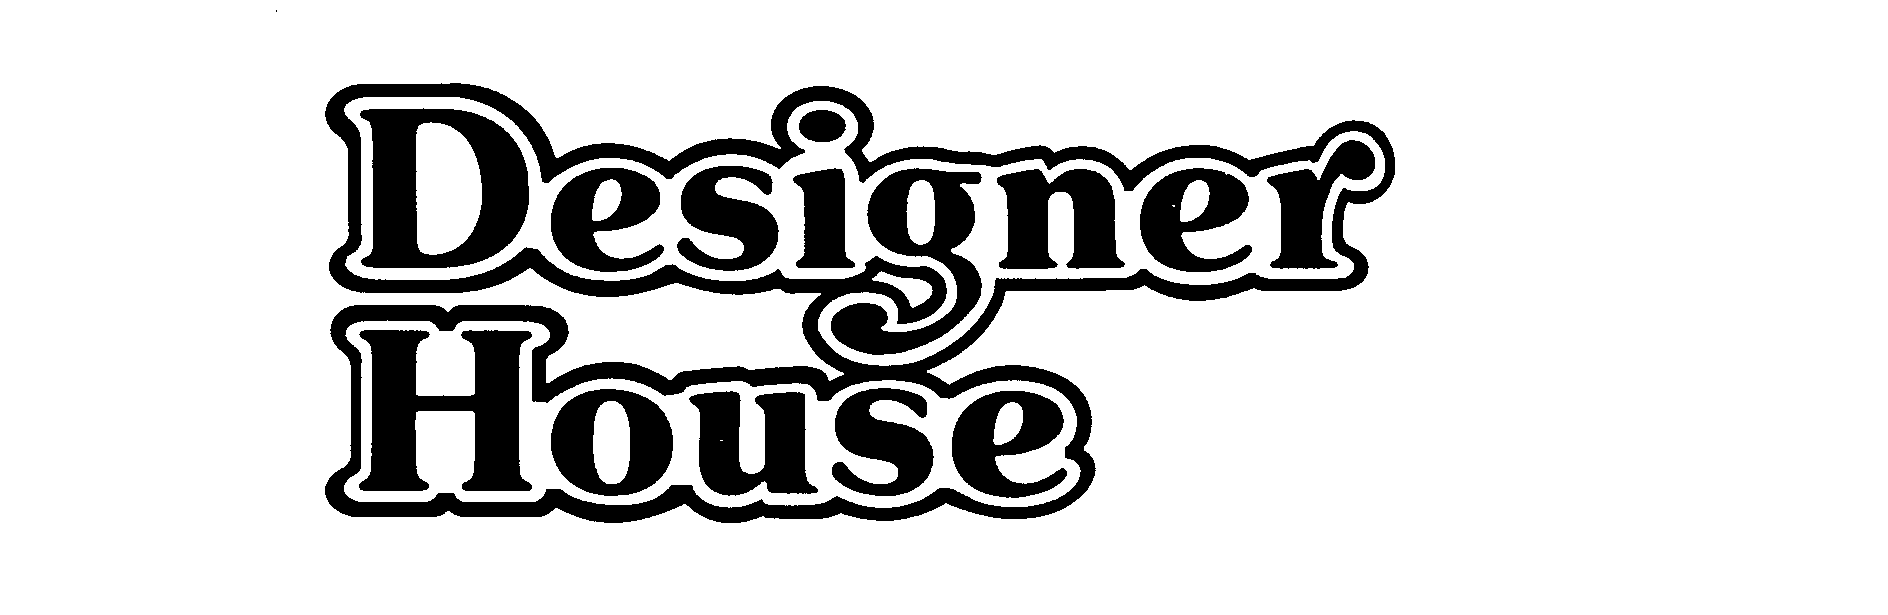 DESIGNER HOUSE